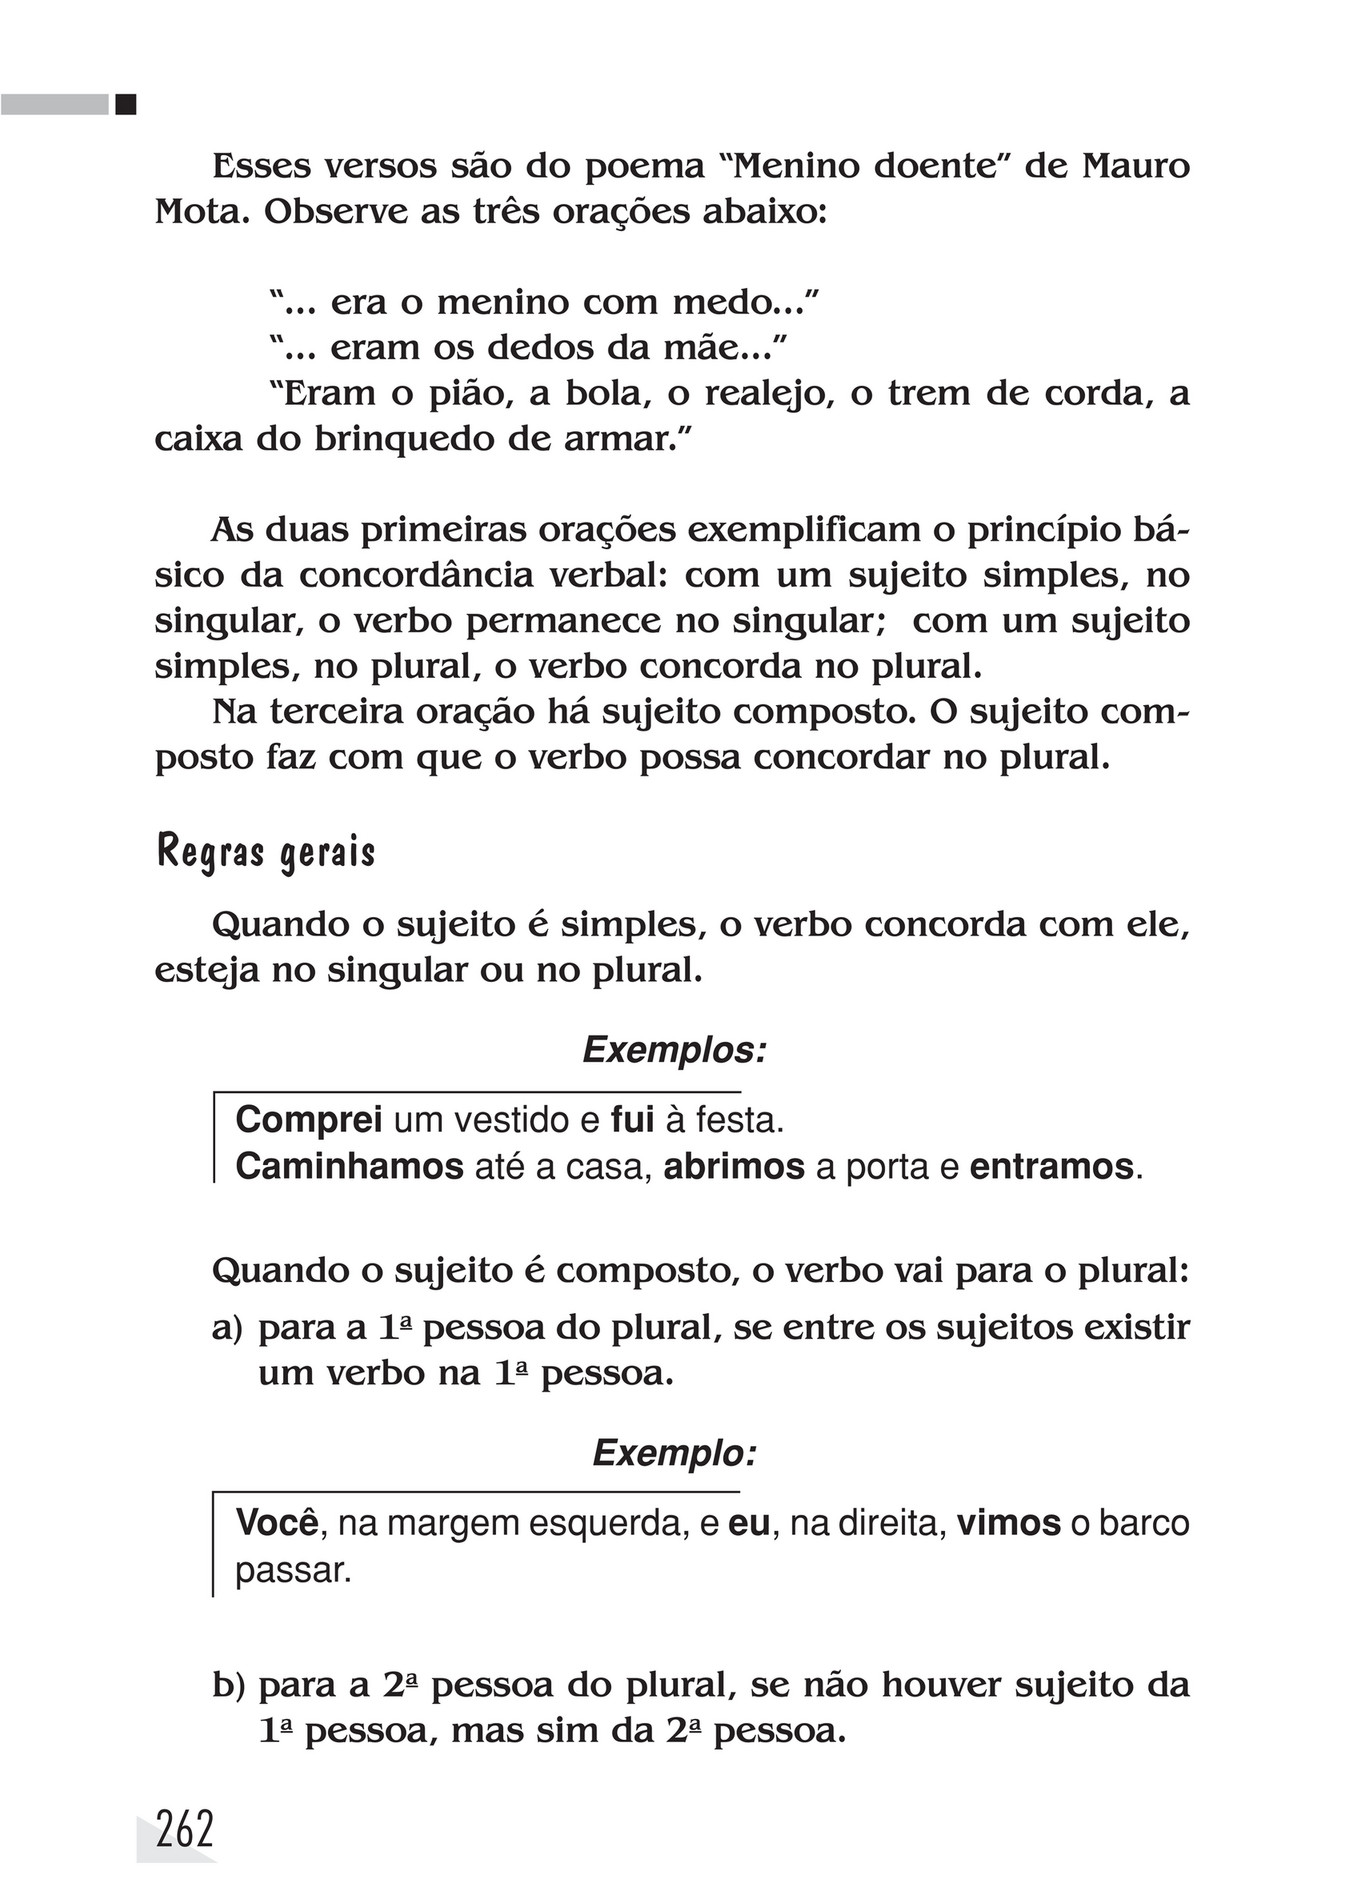 My publications - Inglês - Página 264-265 - Created with Publitas.com